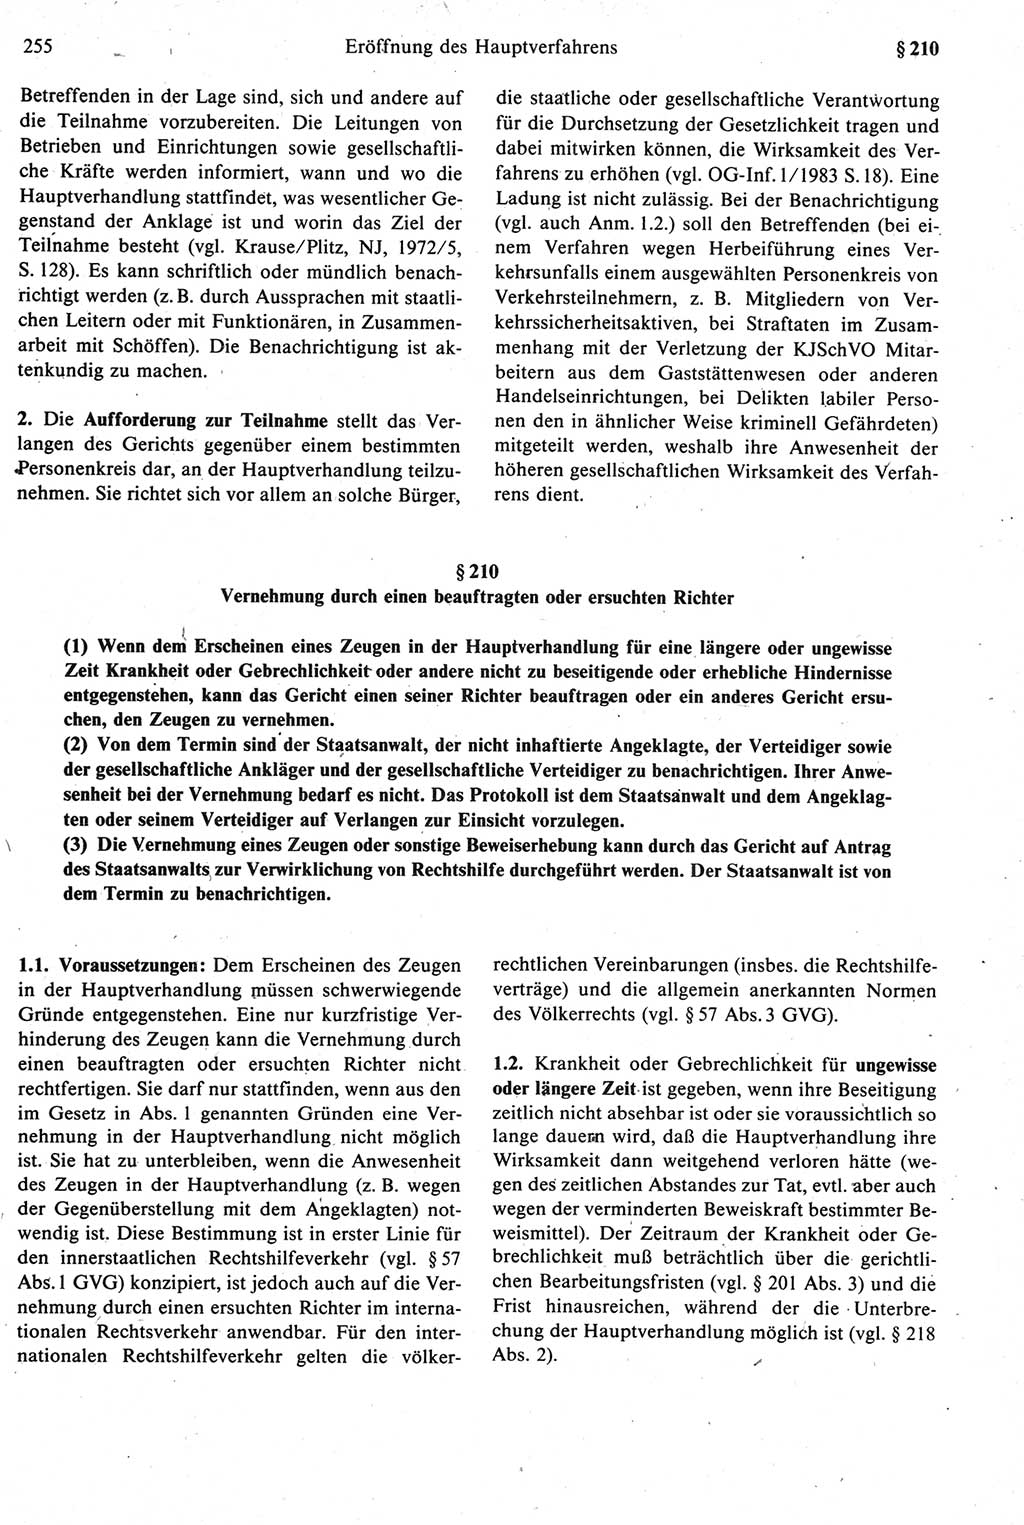 Strafprozeßrecht der DDR [Deutsche Demokratische Republik], Kommentar zur Strafprozeßordnung (StPO) 1987, Seite 255 (Strafprozeßr. DDR Komm. StPO 1987, S. 255)